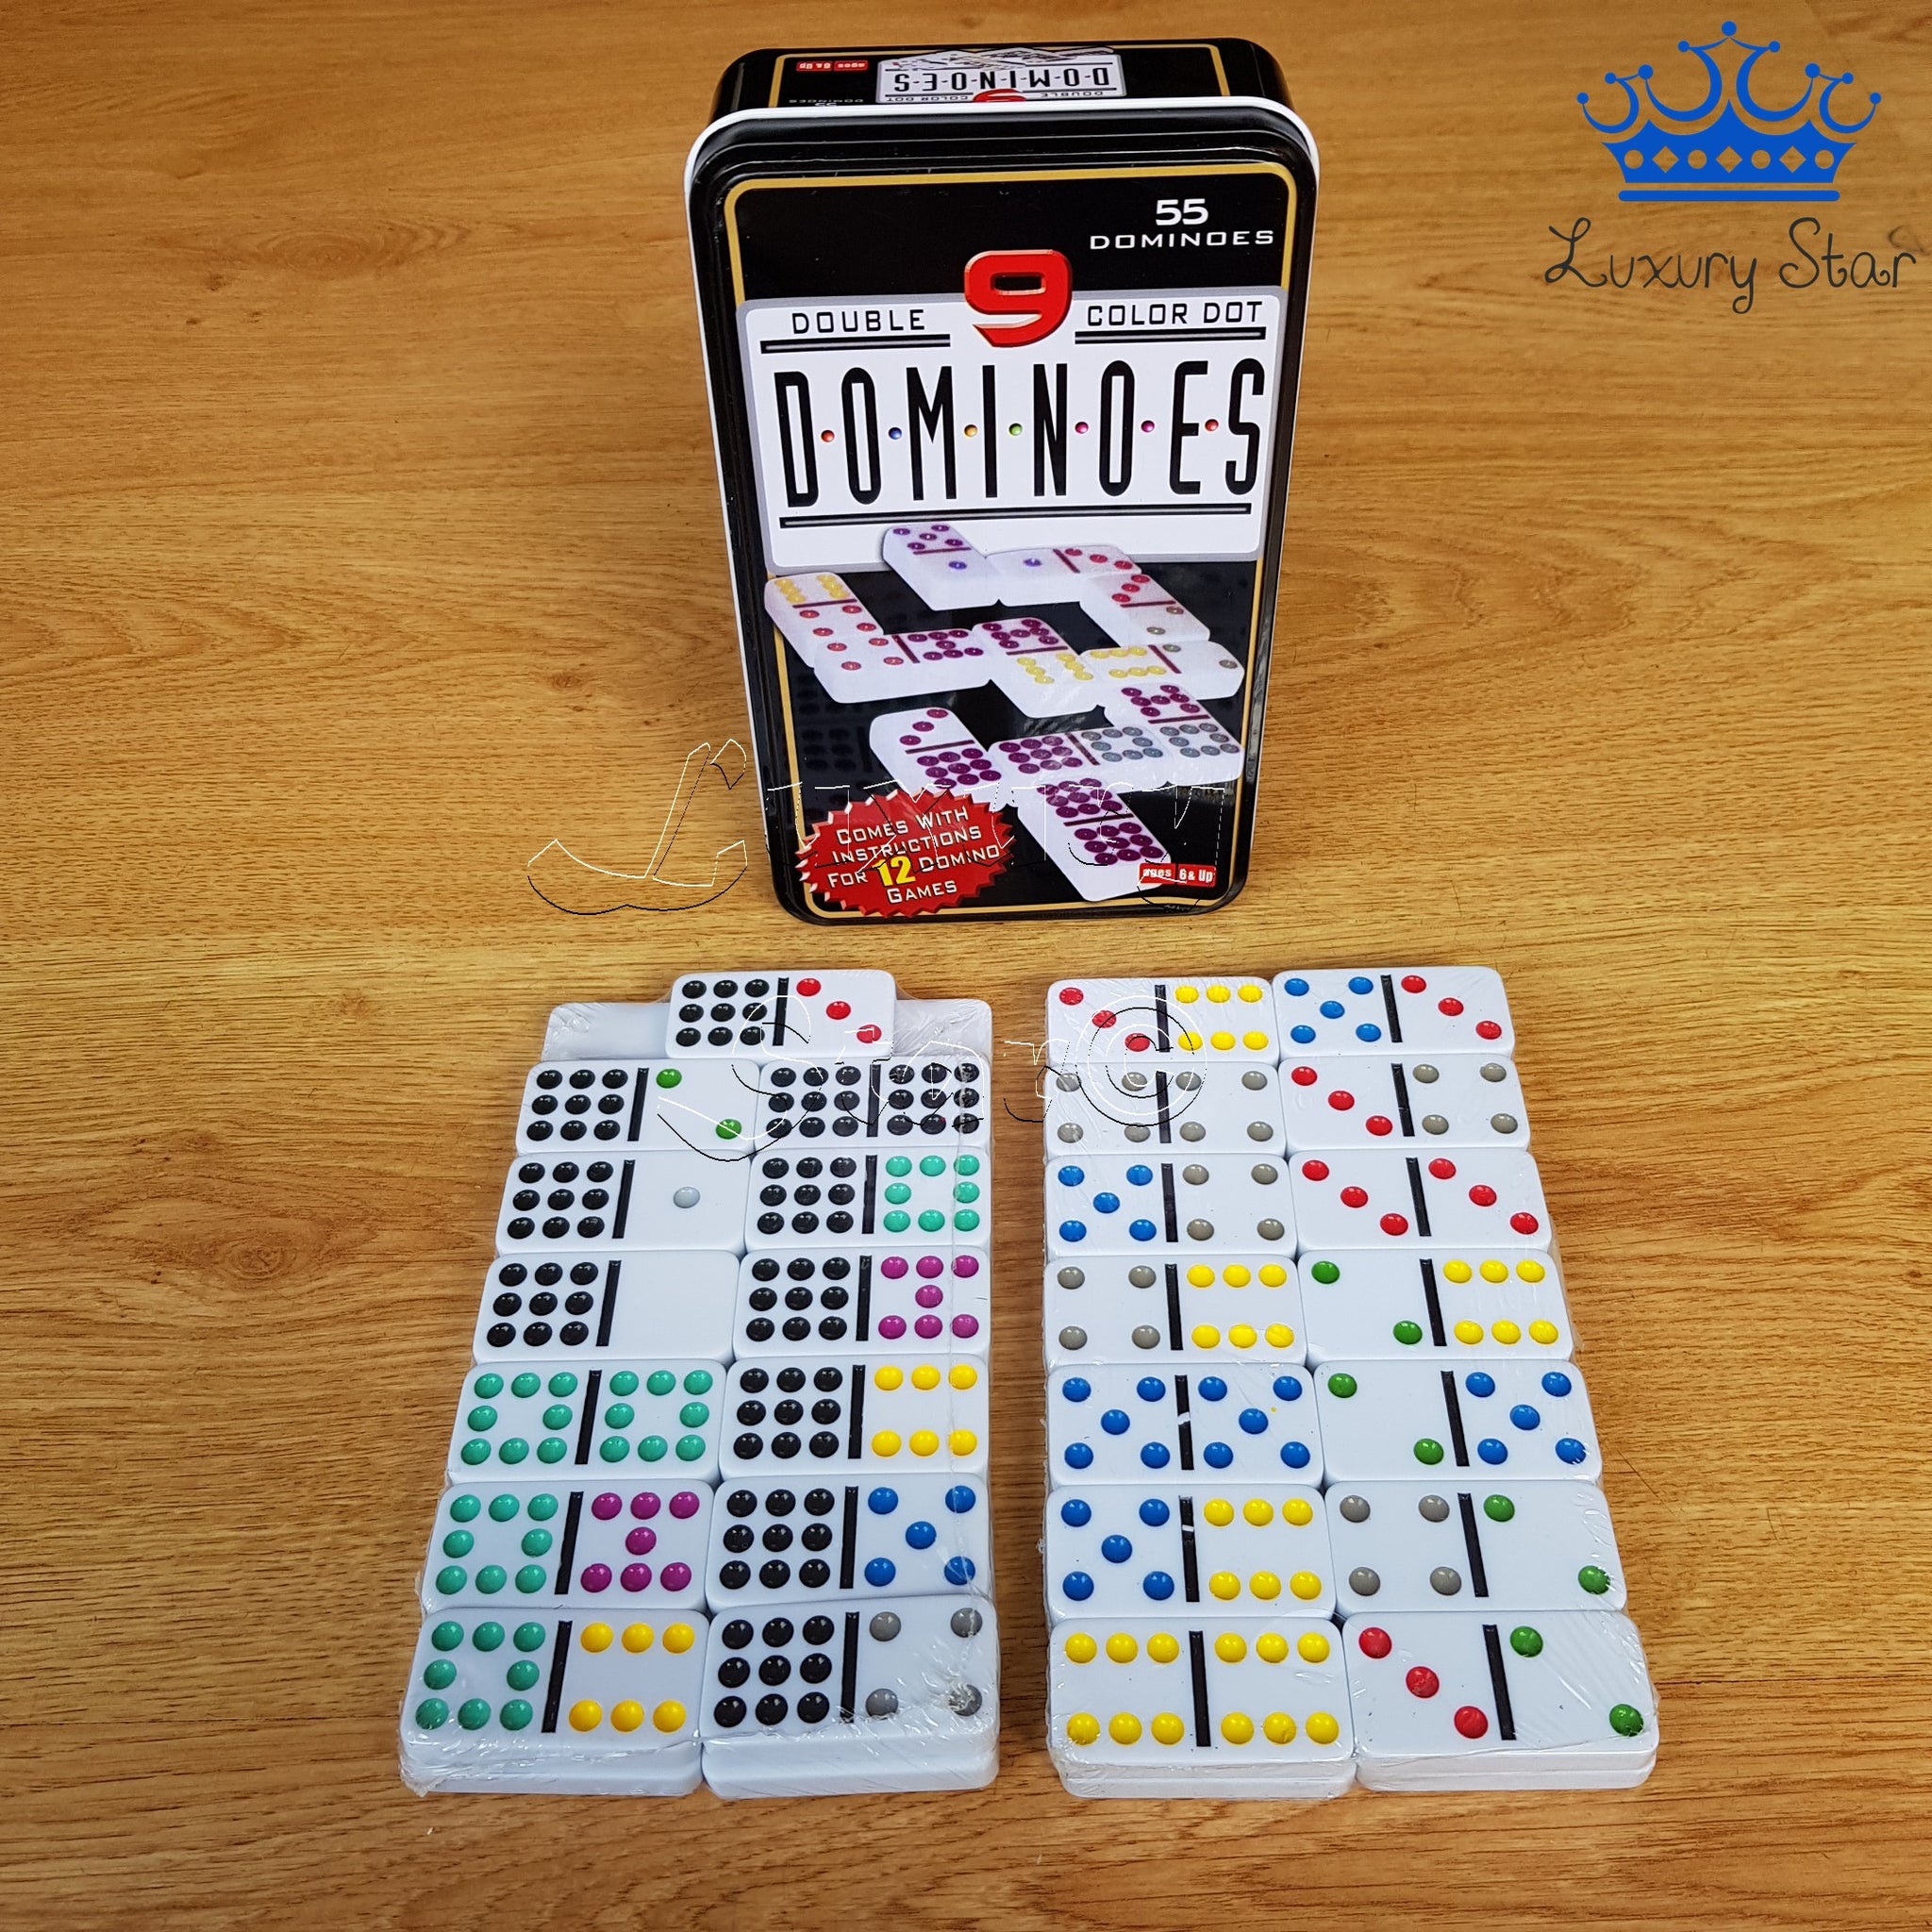 Domino 55 Fichas Color Doble 9 Juego Mesa Caja Metalica – Rubik Cube Star